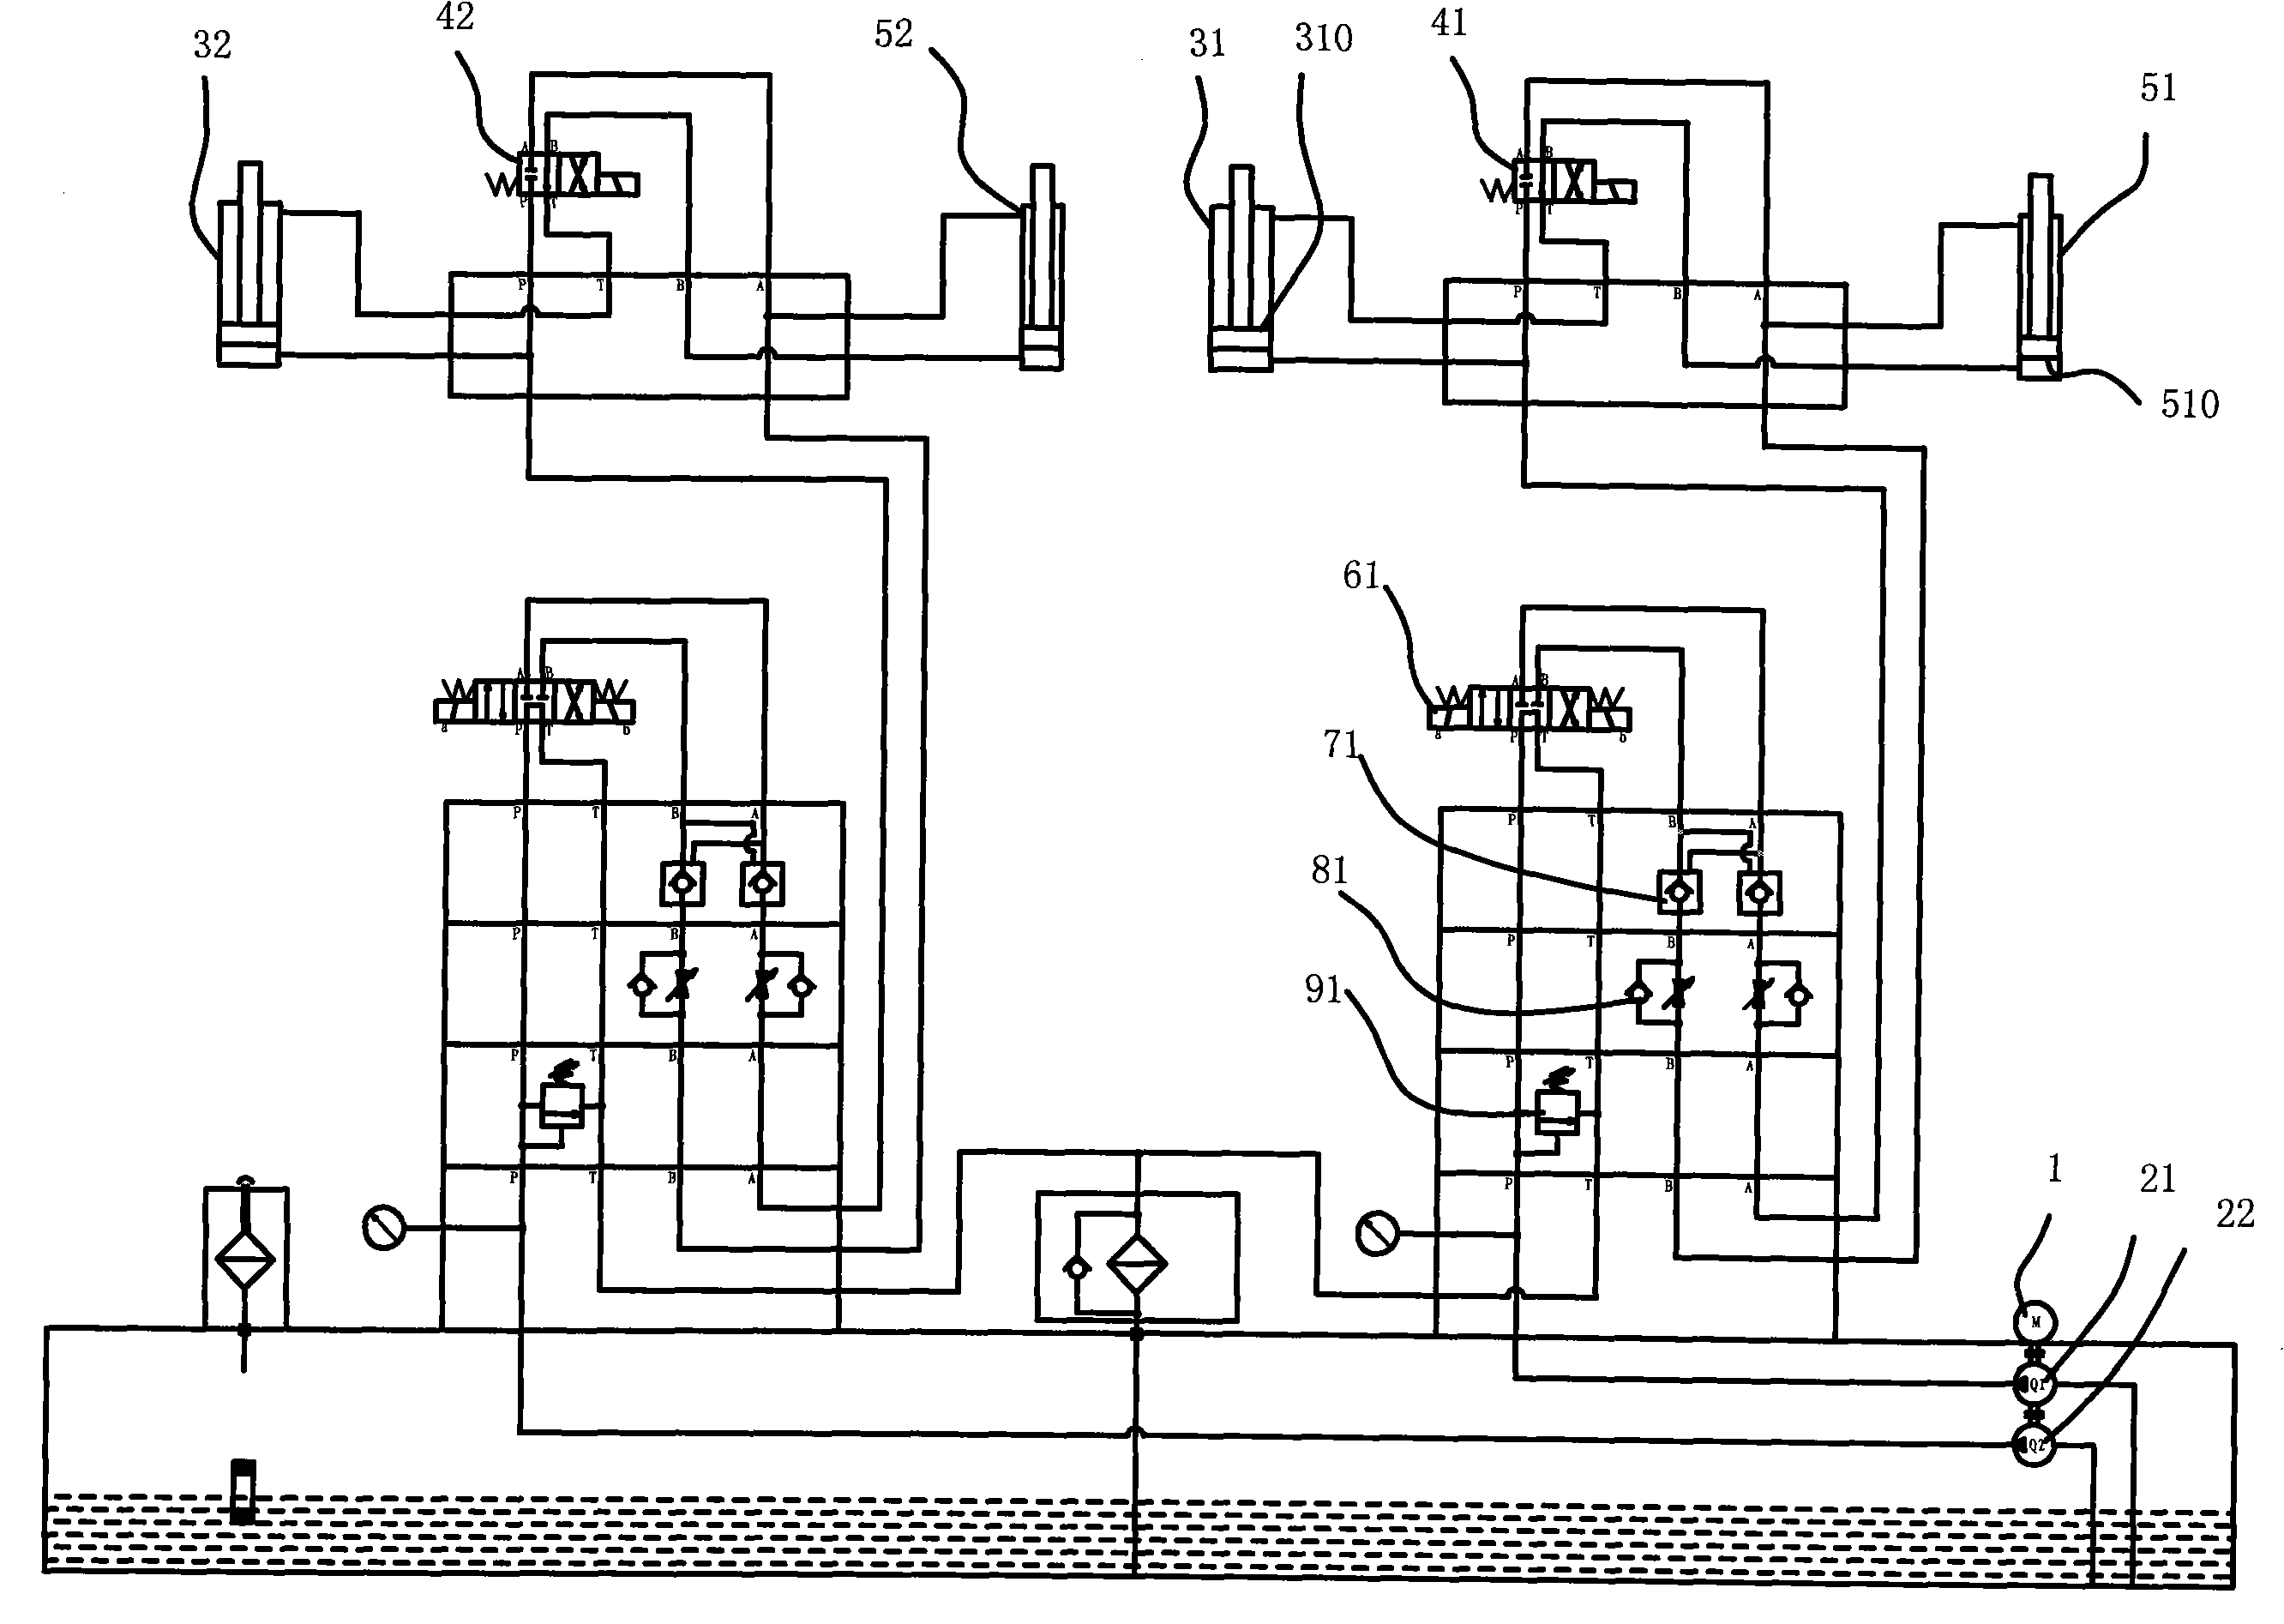 Four-cylinder synchronous hydraulic system